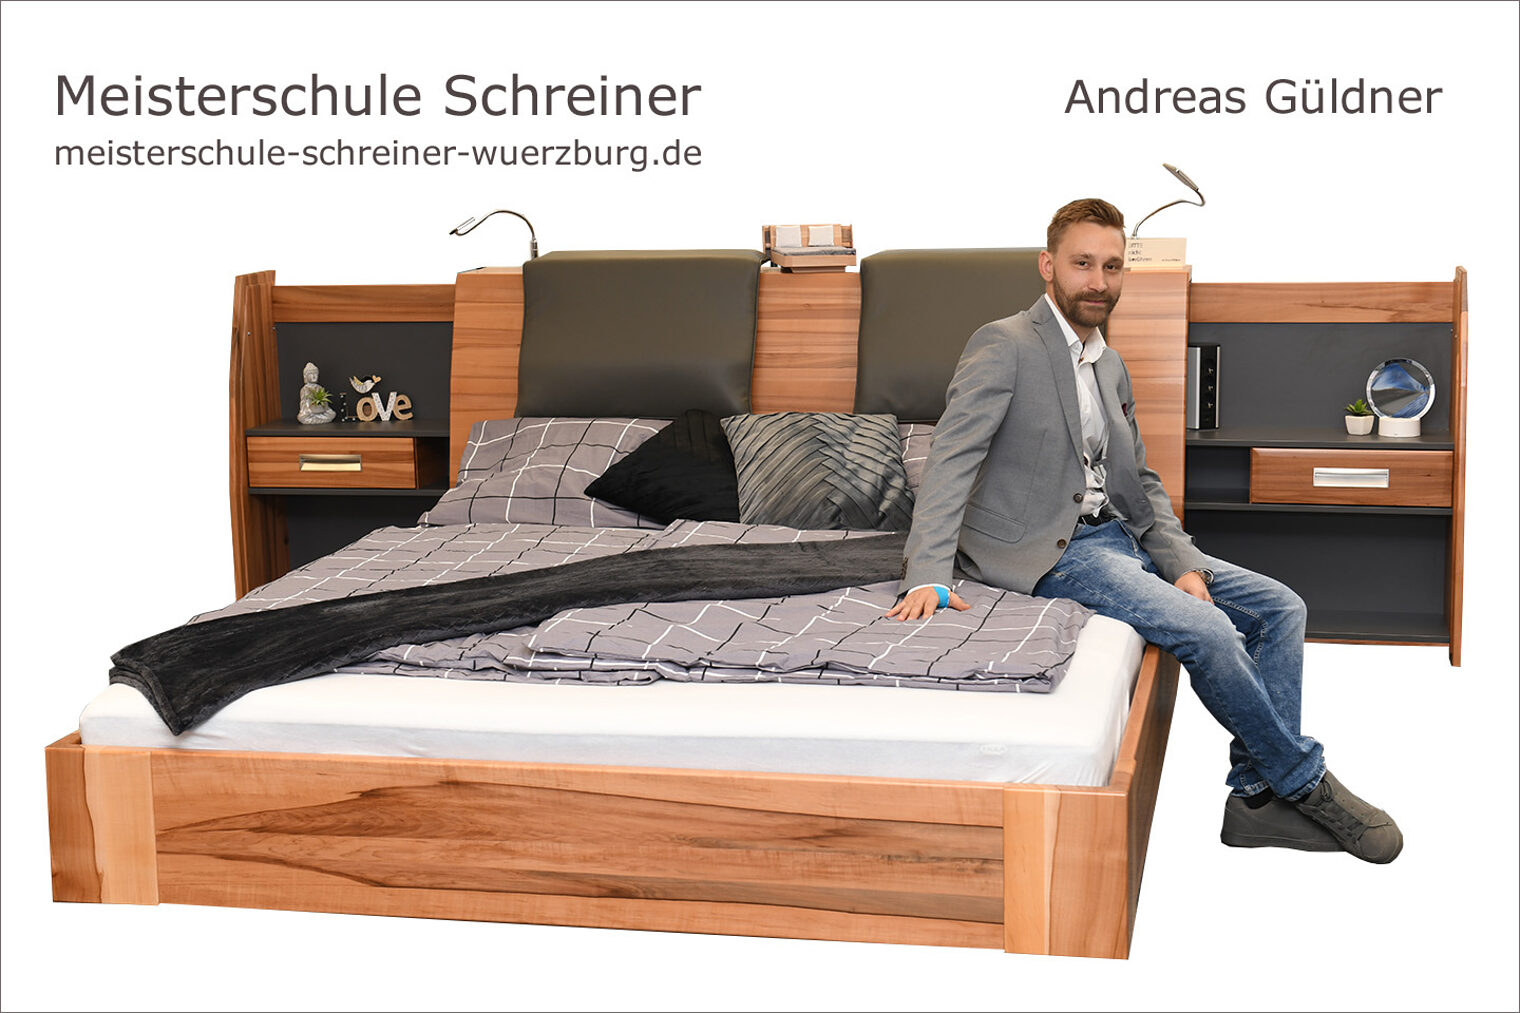 Porträt Andreas Güldner mit seinem Bett als Schreinermeisterstück